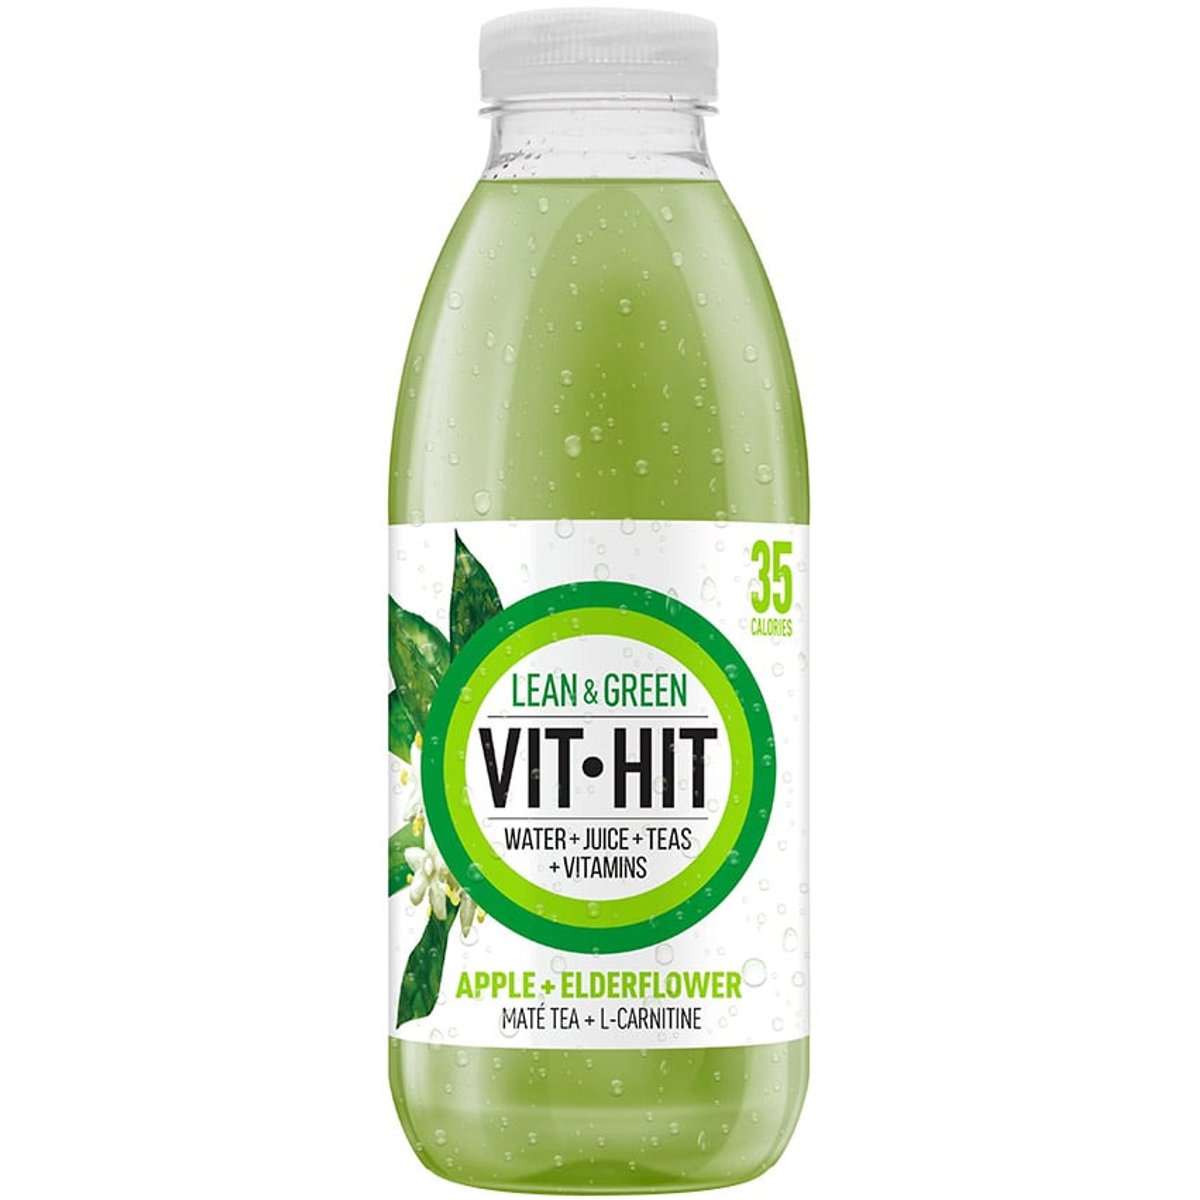 VIT-HIT Lean and Green nápoj jablko a bezový květ